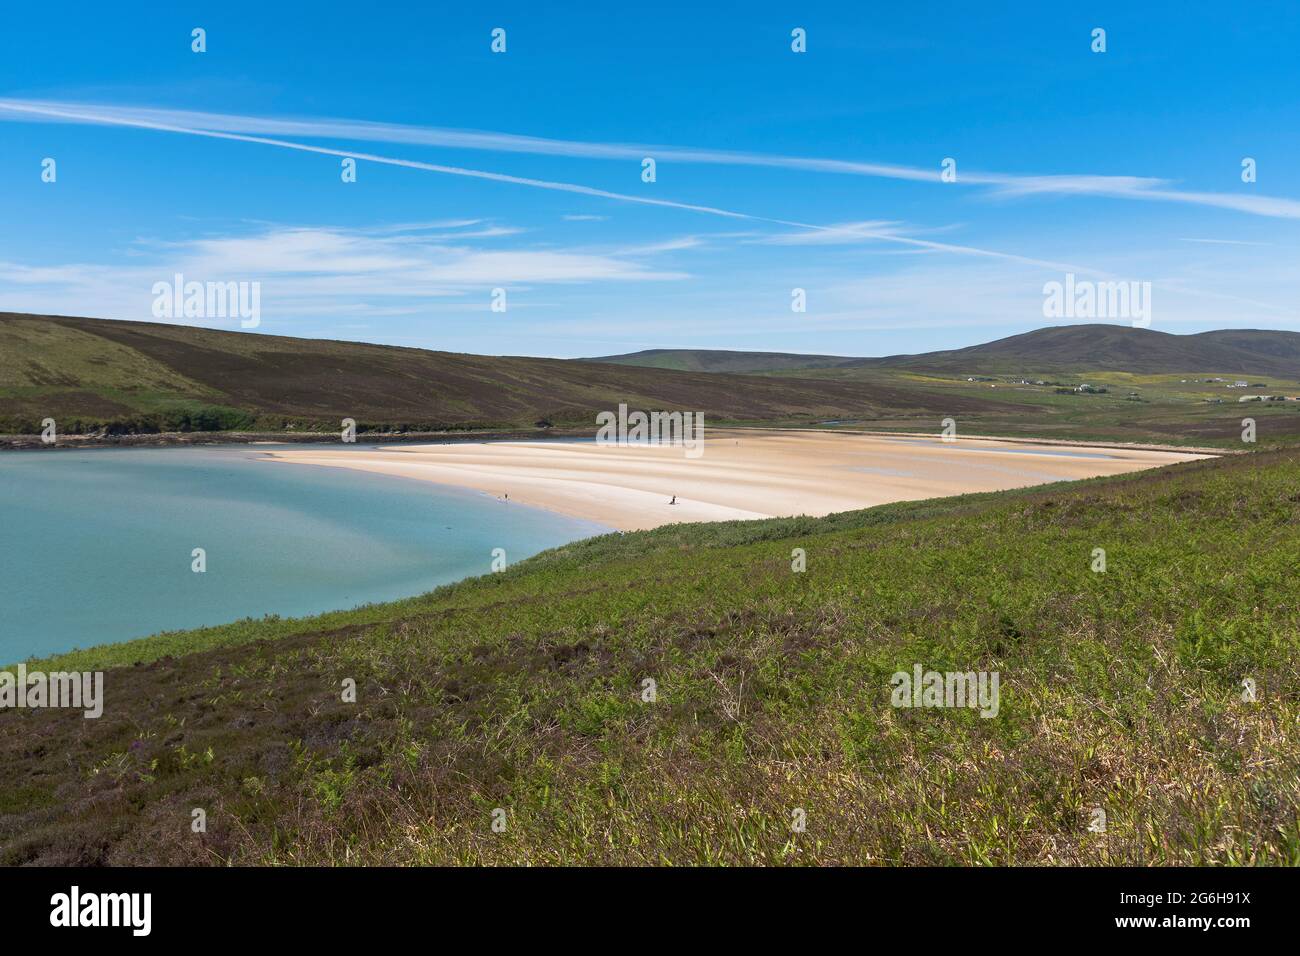 dh Waulkmill Bay ORPHIR ORKNEY Famiglia sulla spiaggia deserta blu mare cielo estate spiagge sabbiose persone riva remota scozia costa scozzese Foto Stock